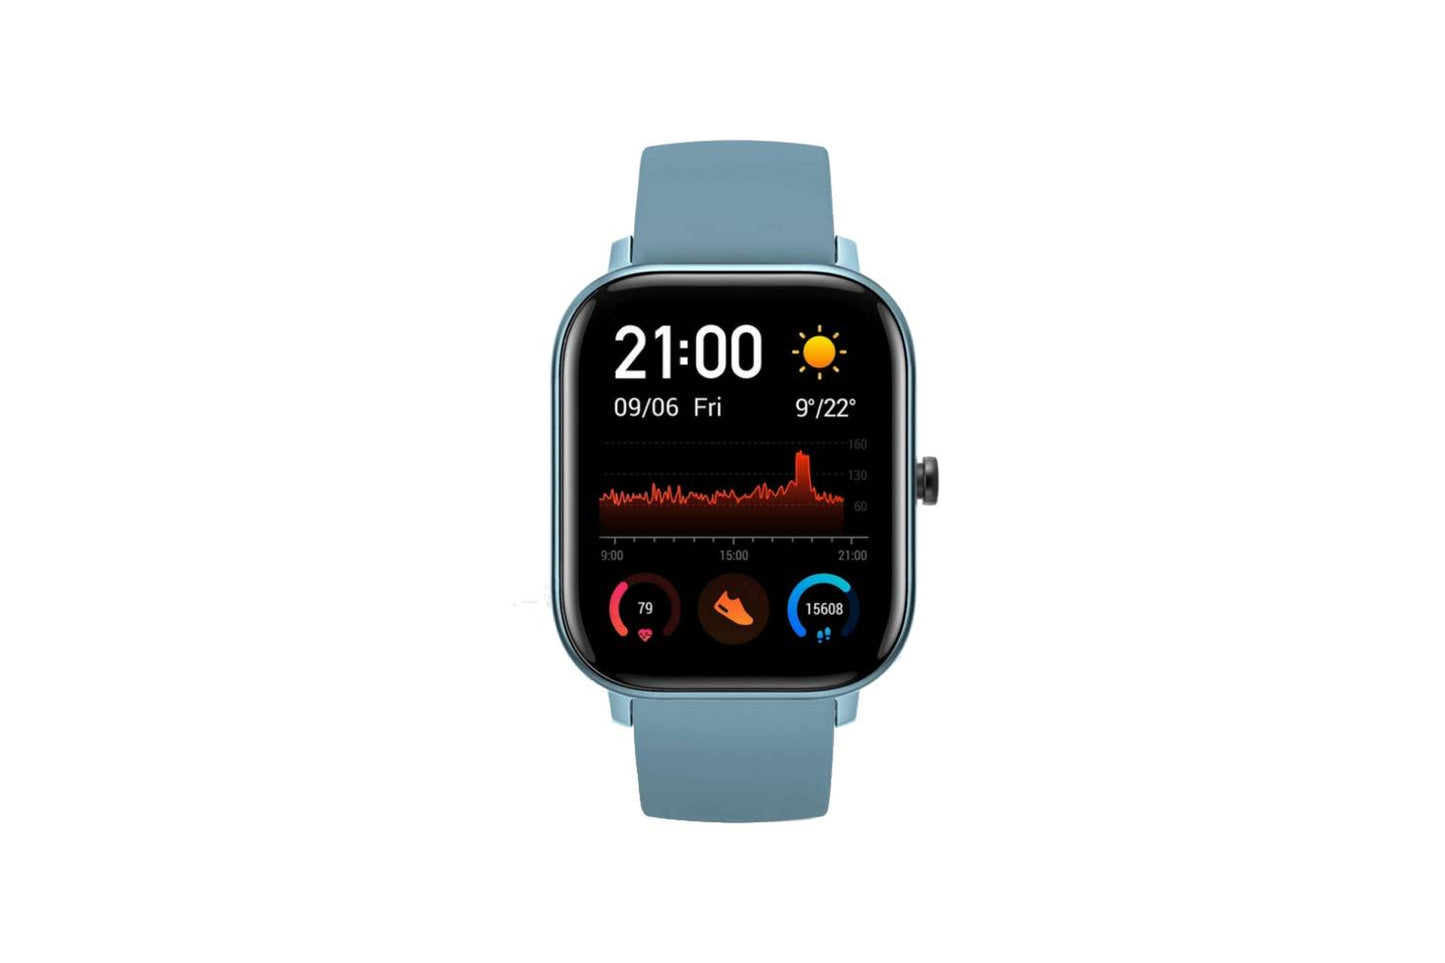 Fire-Boltt Full Touch Smart Watch 1’4 inch HD - Blue